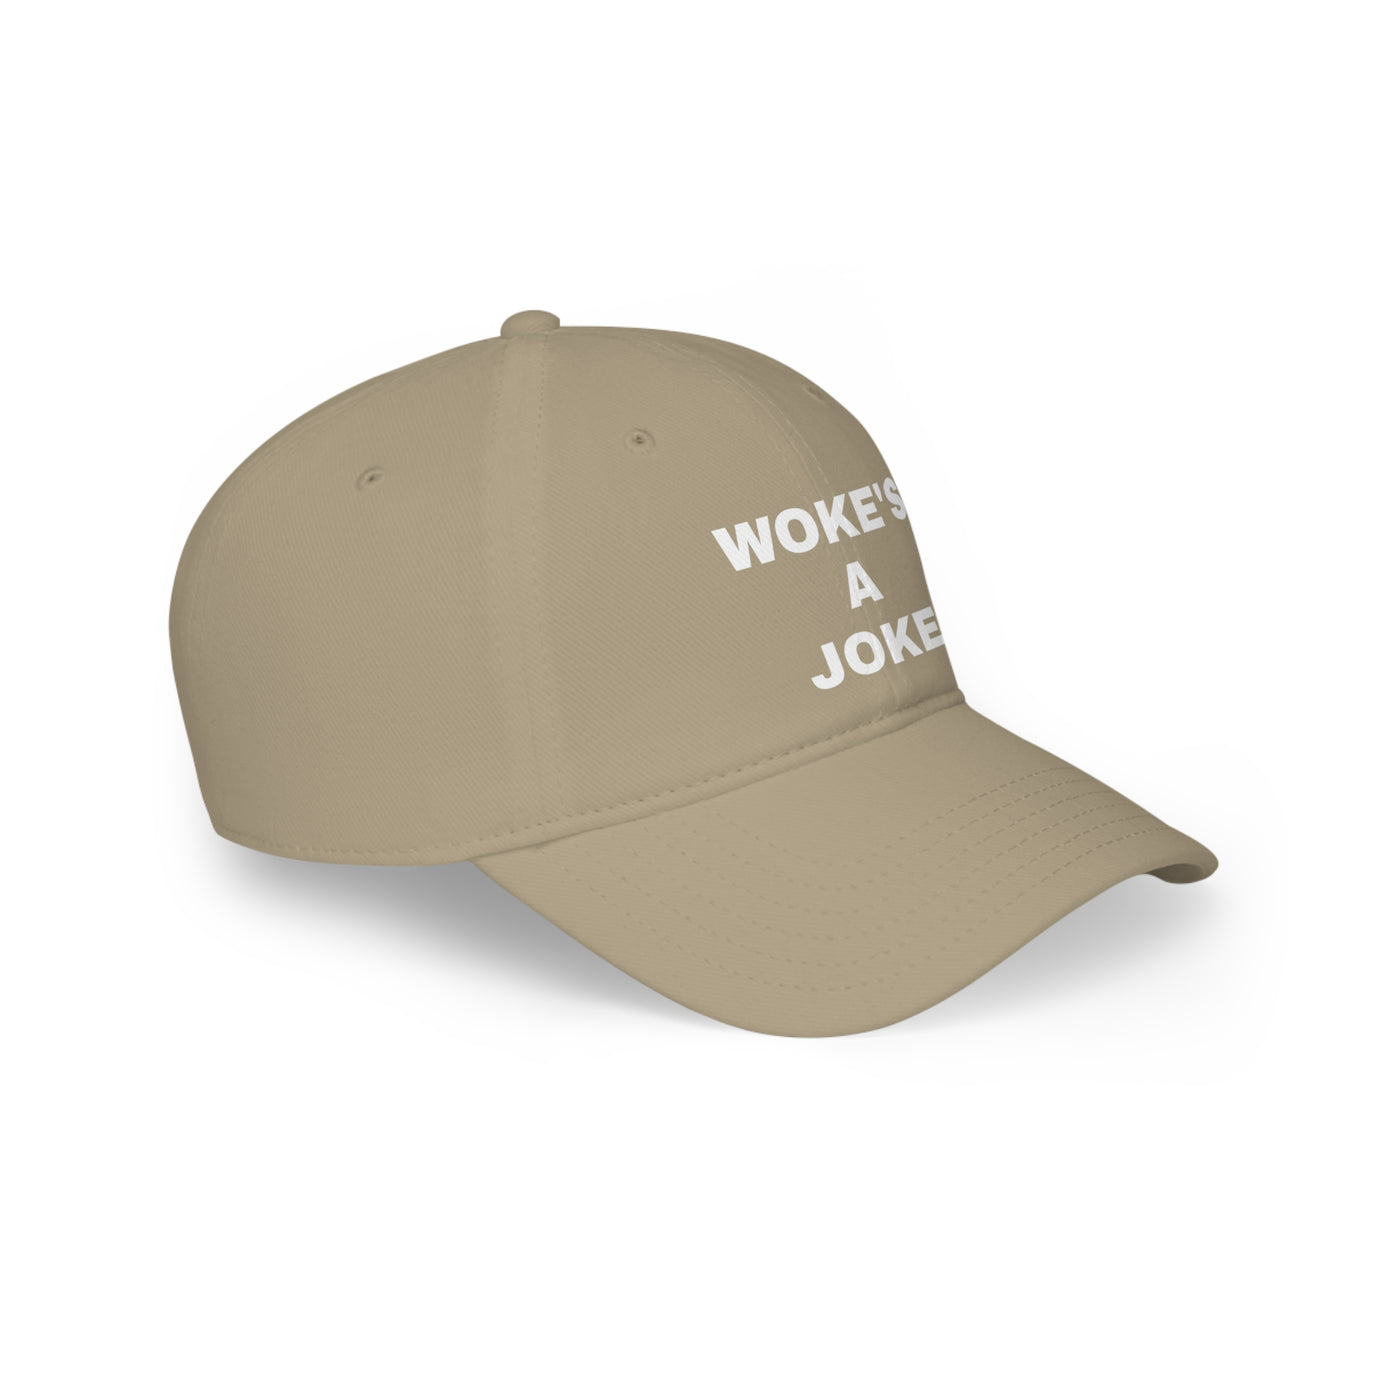 WOKE'S A JOKE - PATRIOTIC HAT